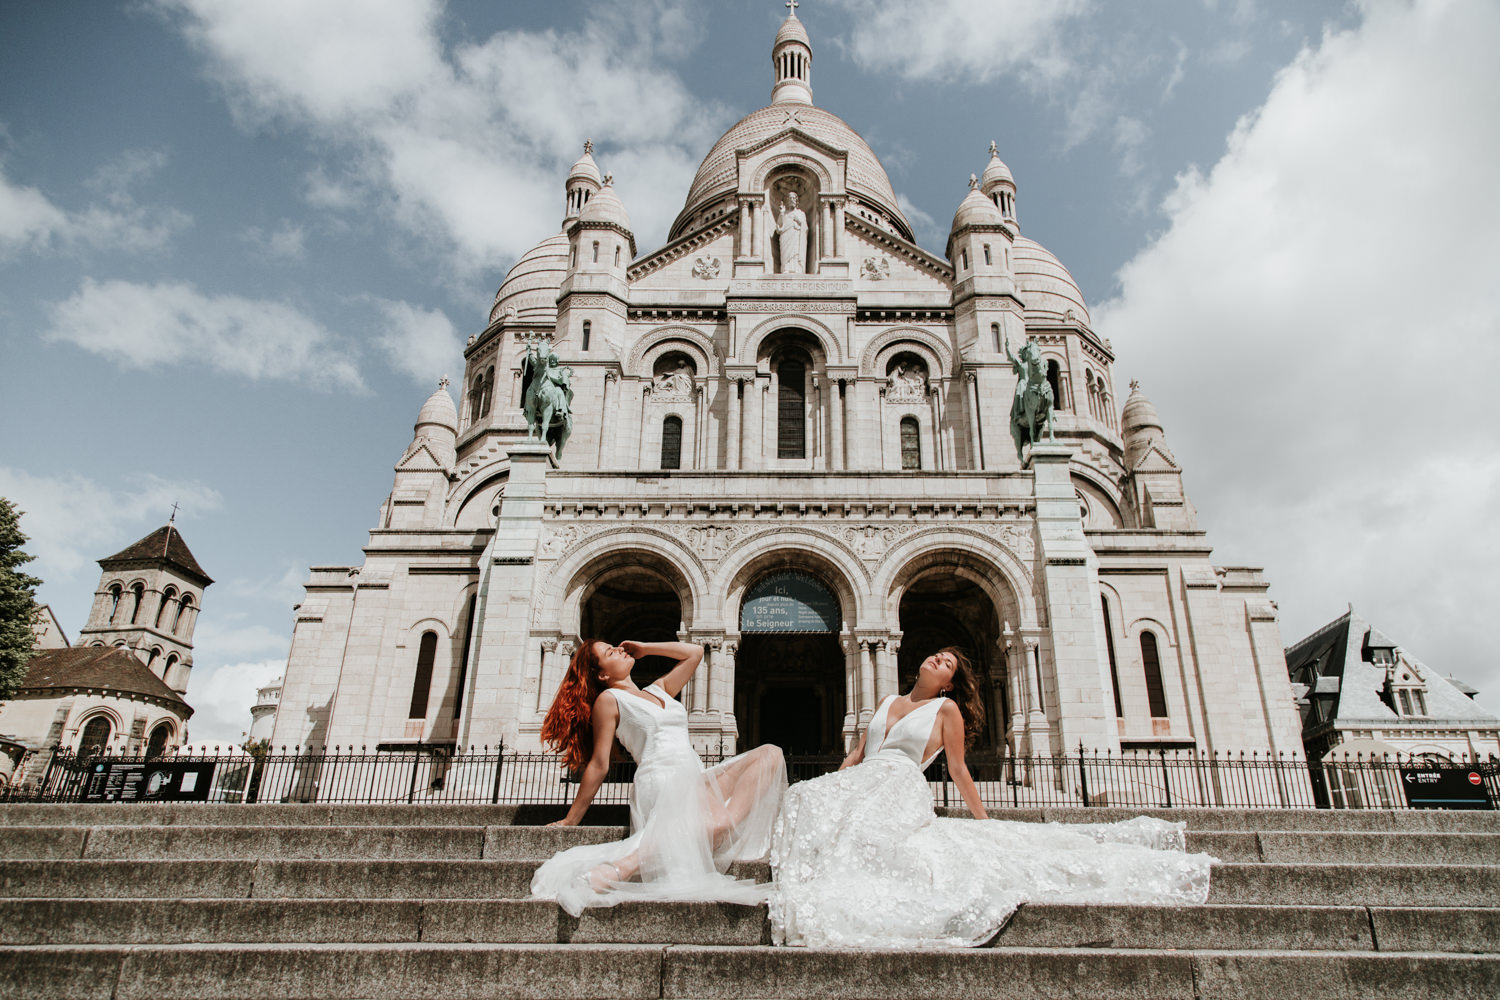 Photographe mariage femmes paris